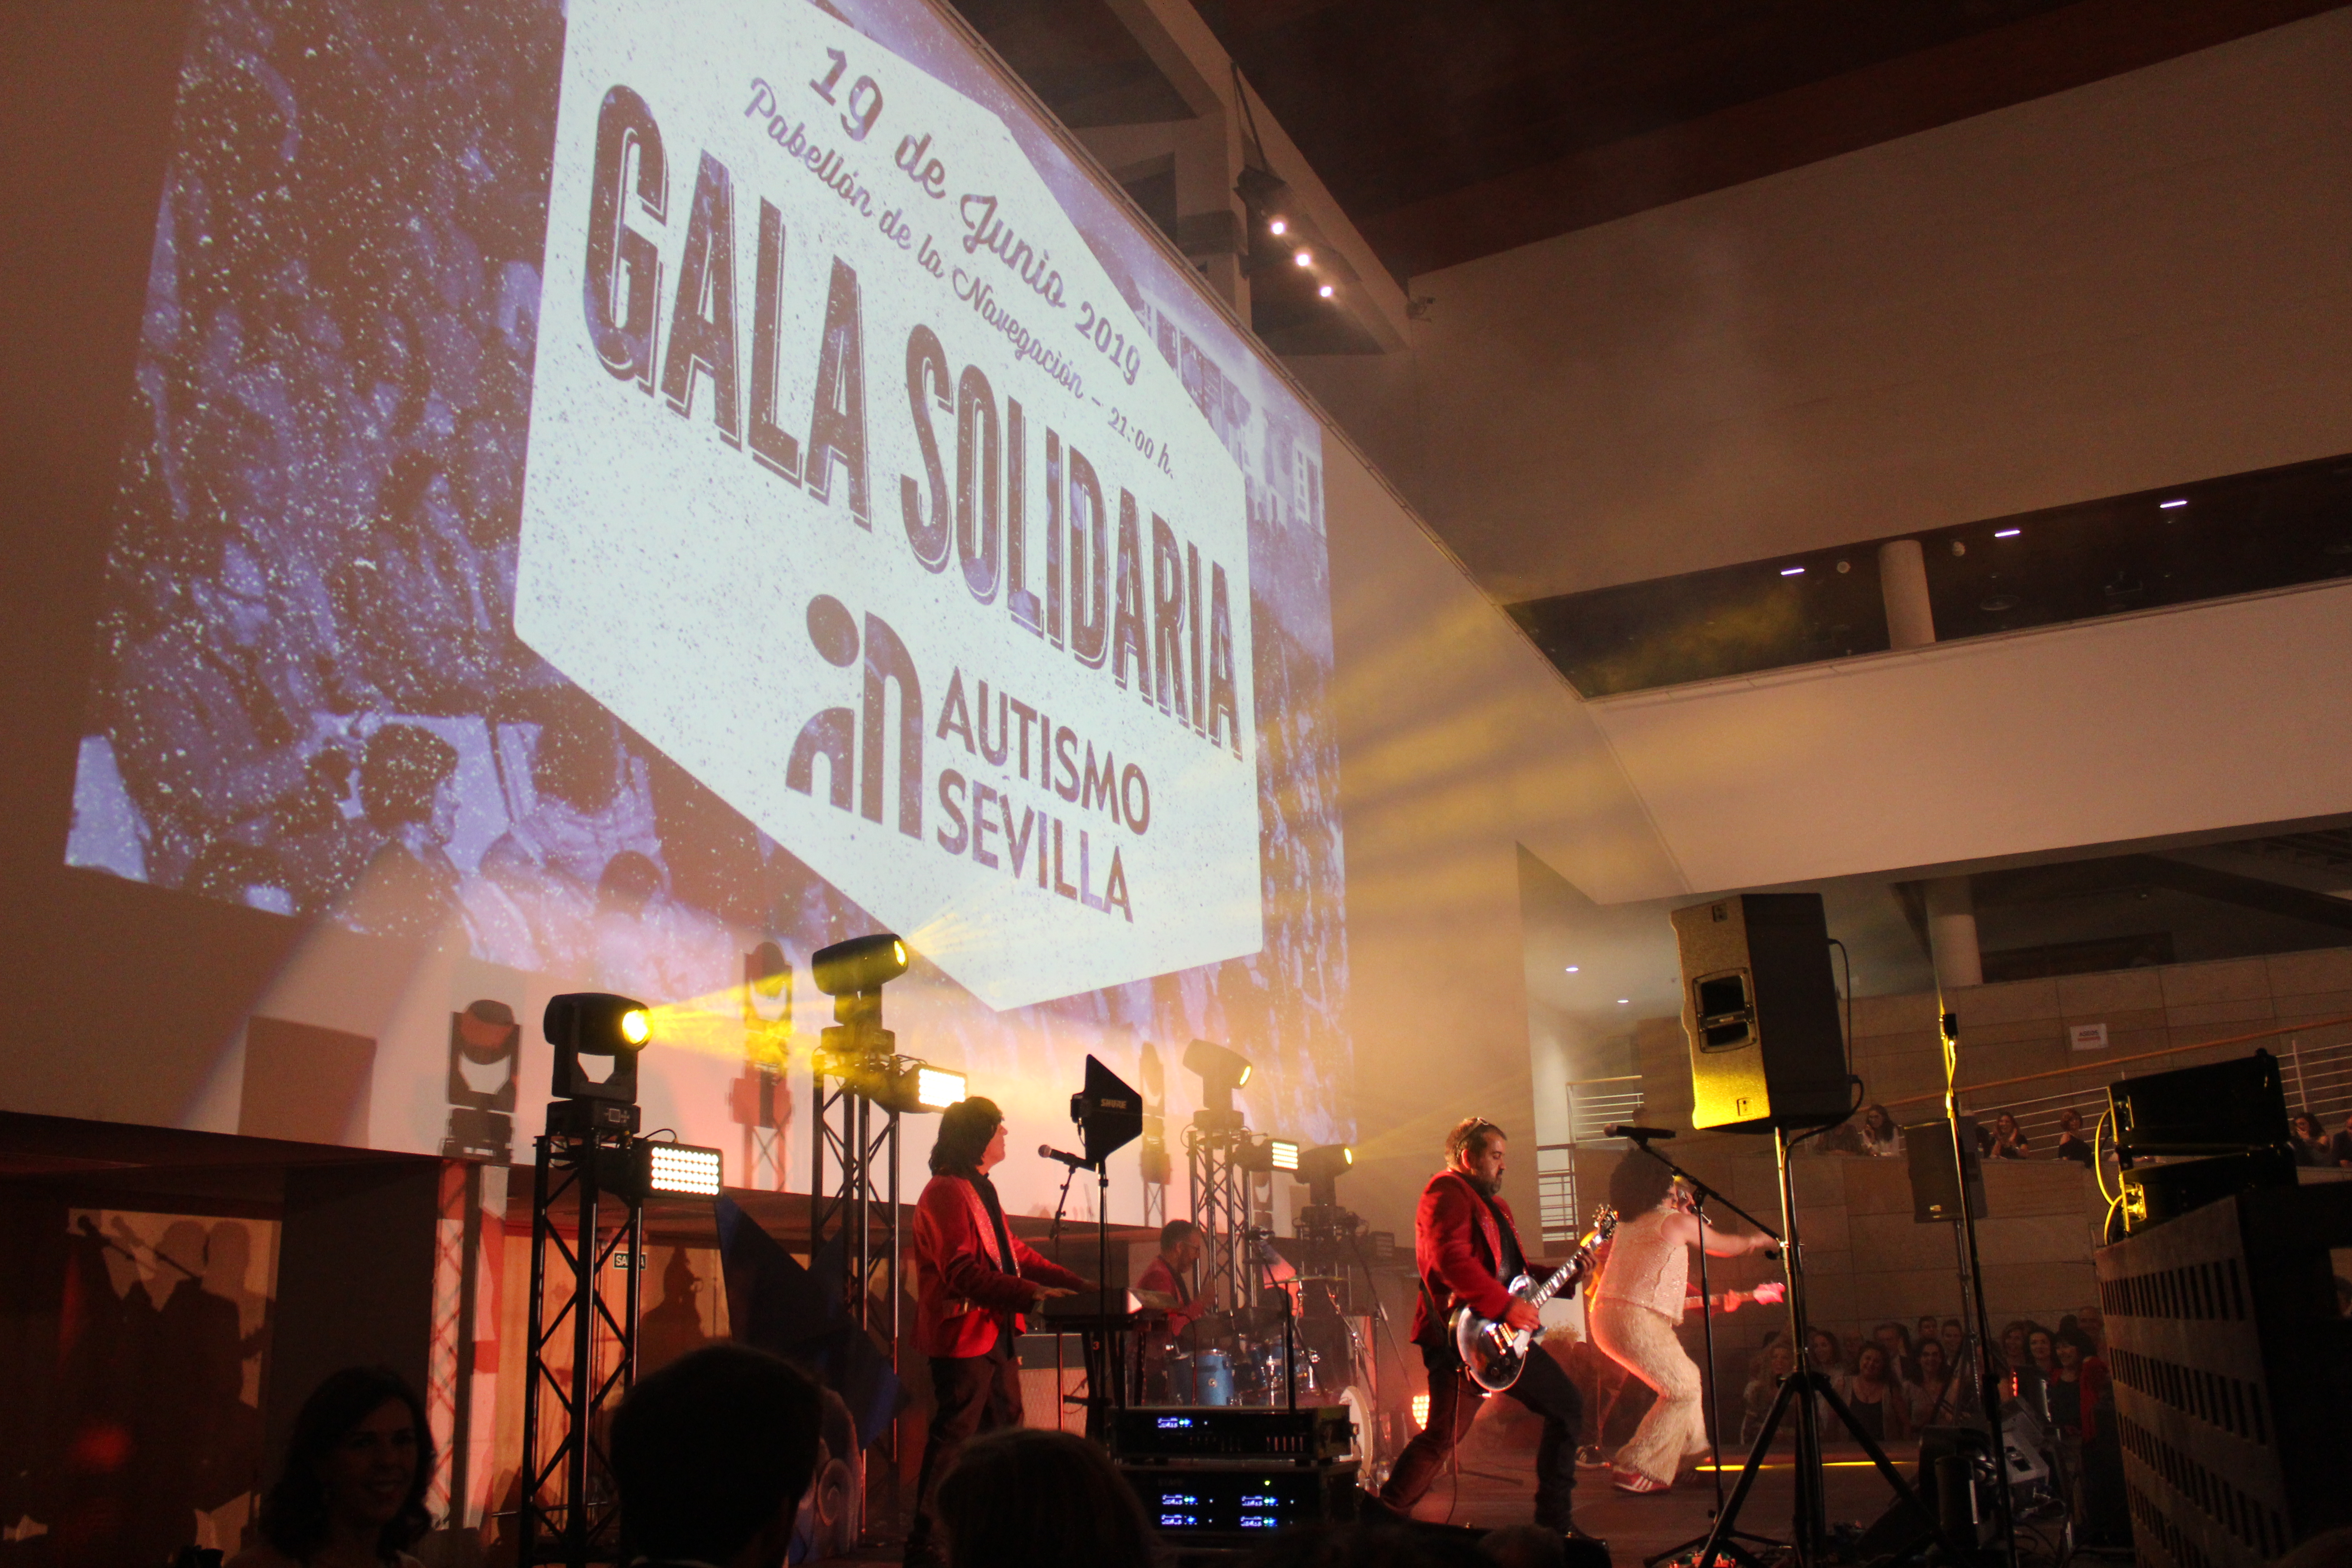 Autismo Sevilla organiza la 22ª edición de la Gala Solidaria por el Autismo